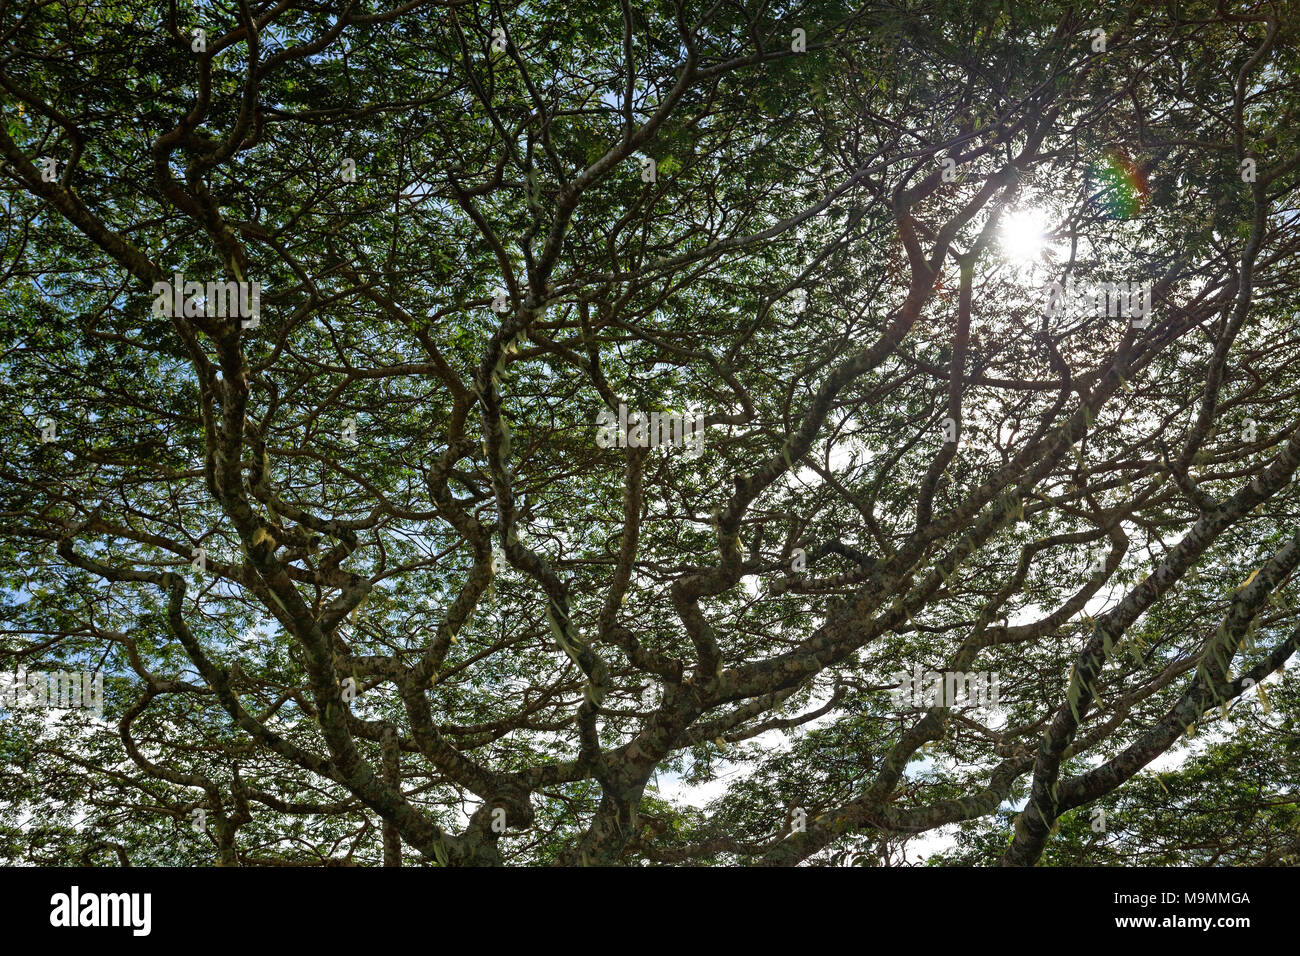 Fitti rami con tree moss, Plateau de Taravao, Tahiti Iti, isole della Società, isole Windward, Polinesia Francese Foto Stock